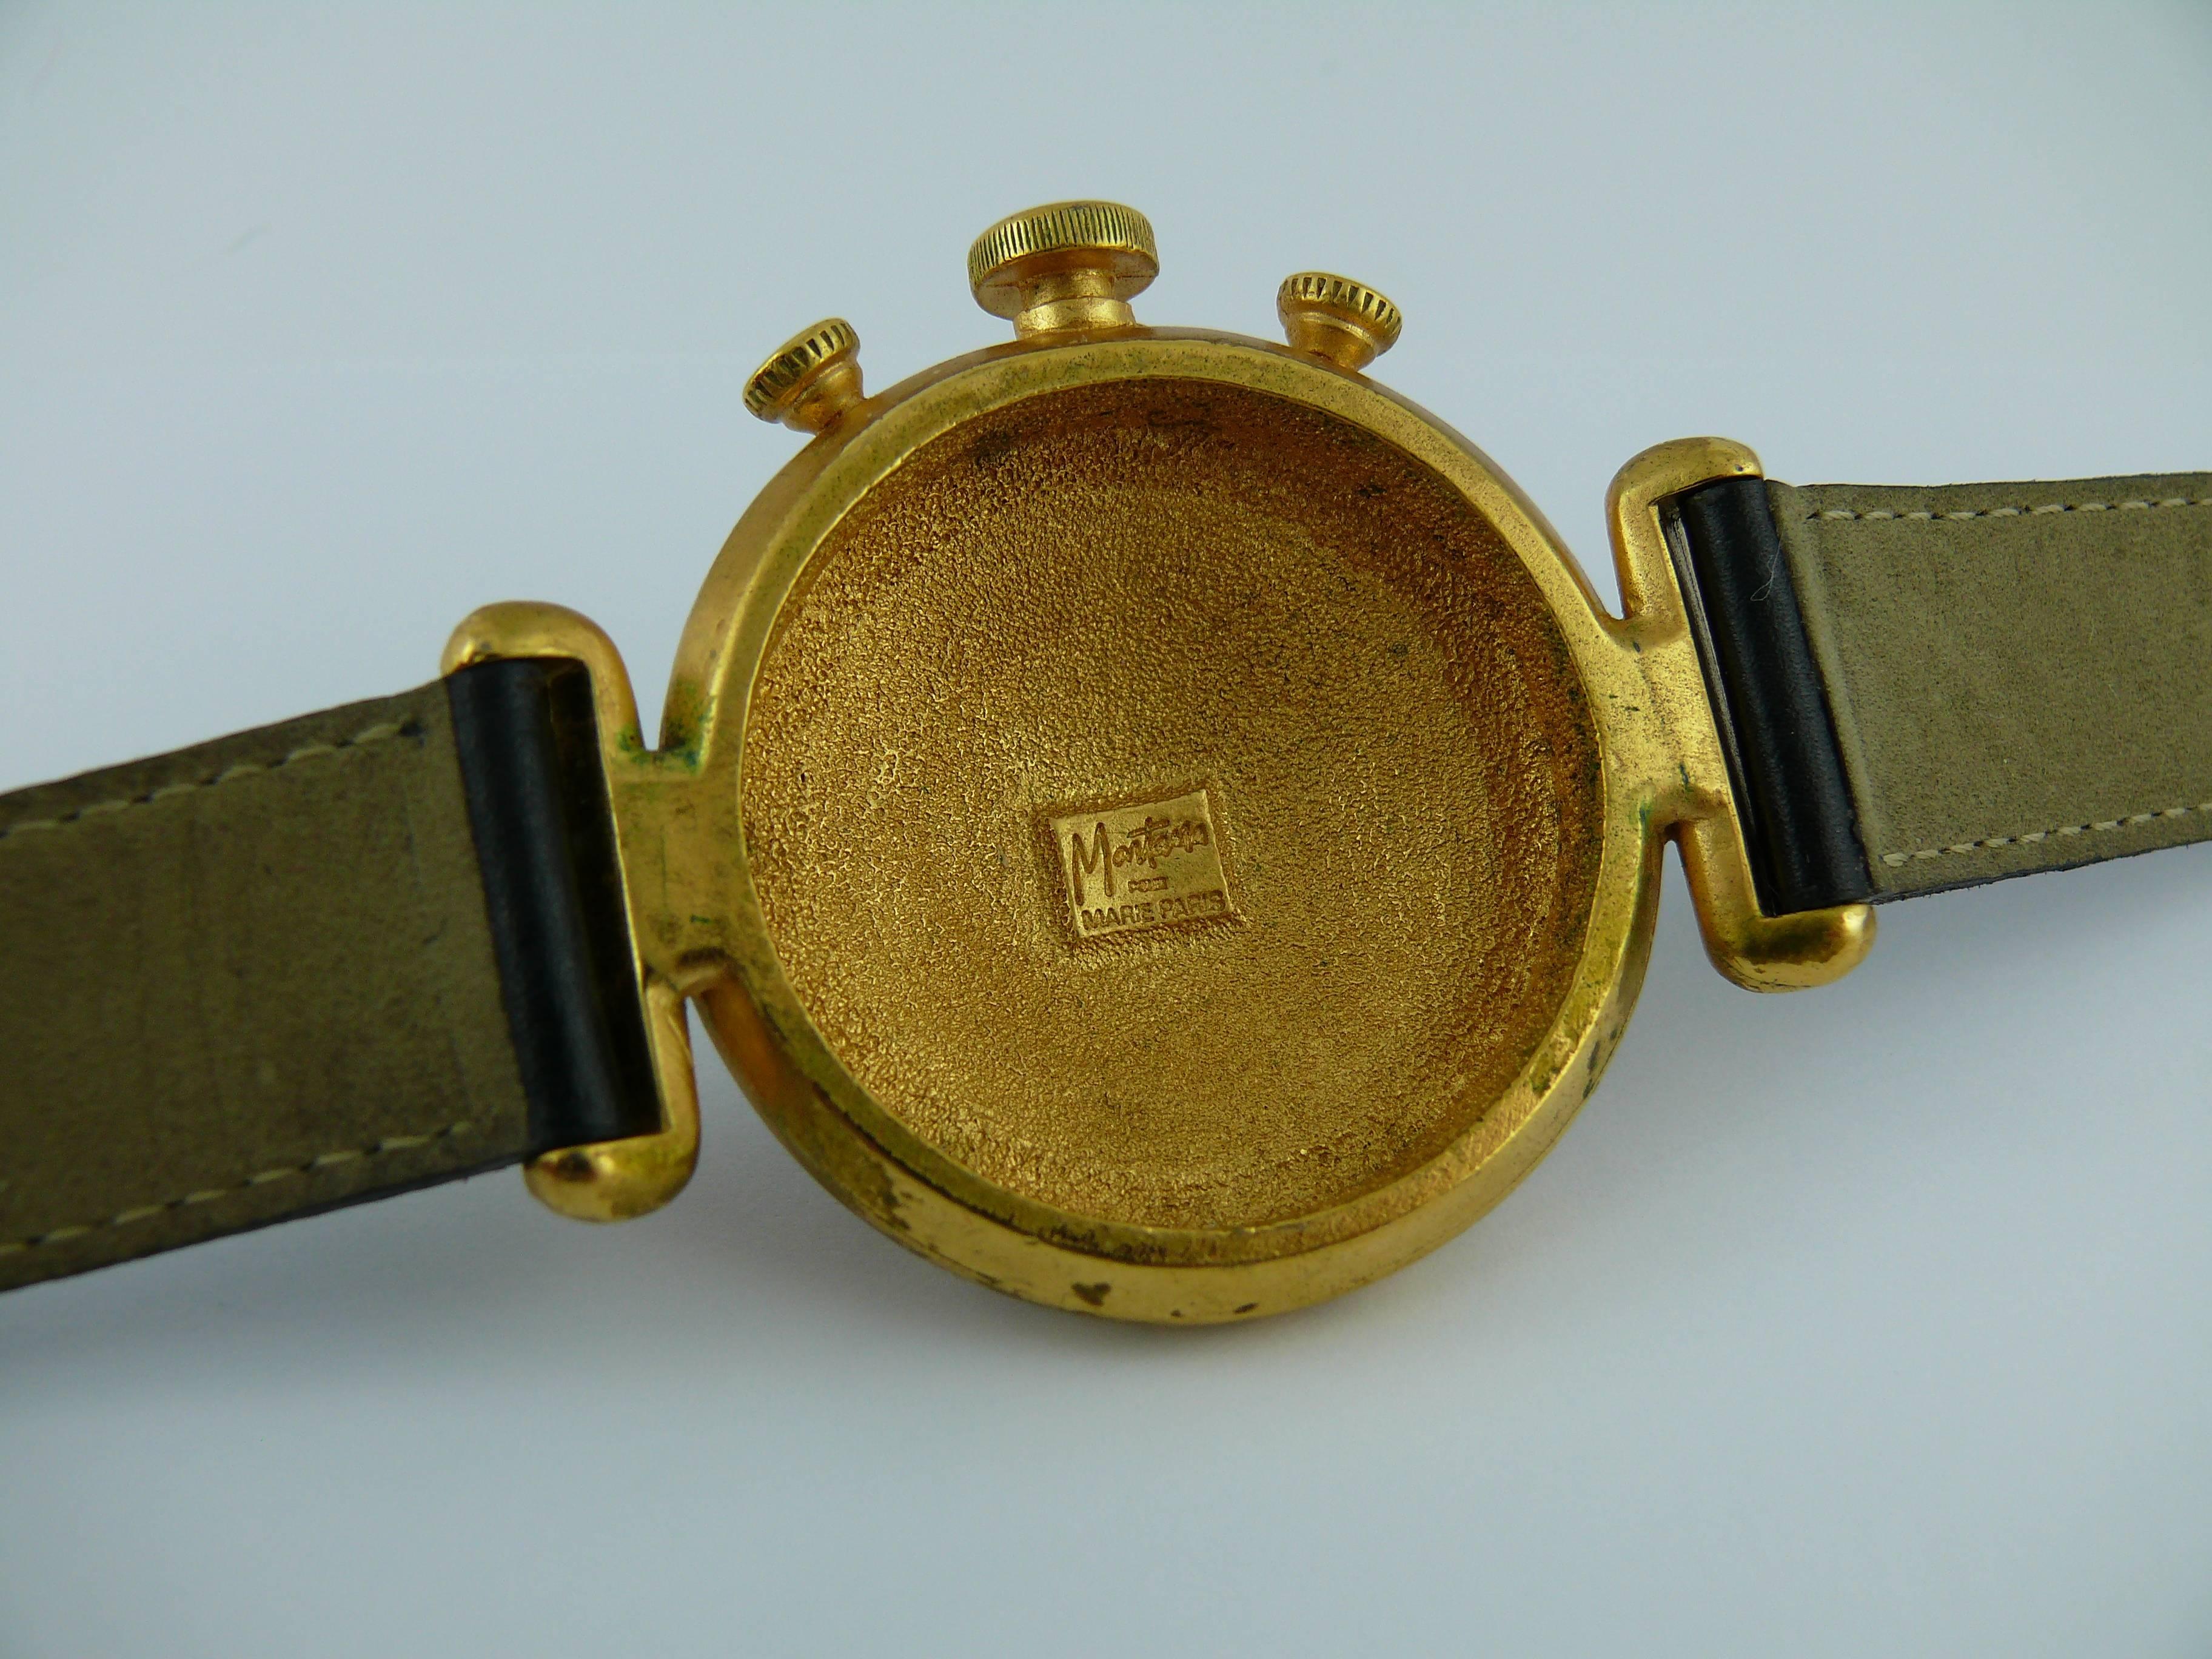 Claude Montana Vintage Trompe L'Oeil Watch Dial Double Tour Wrap Bracelet For Sale 4